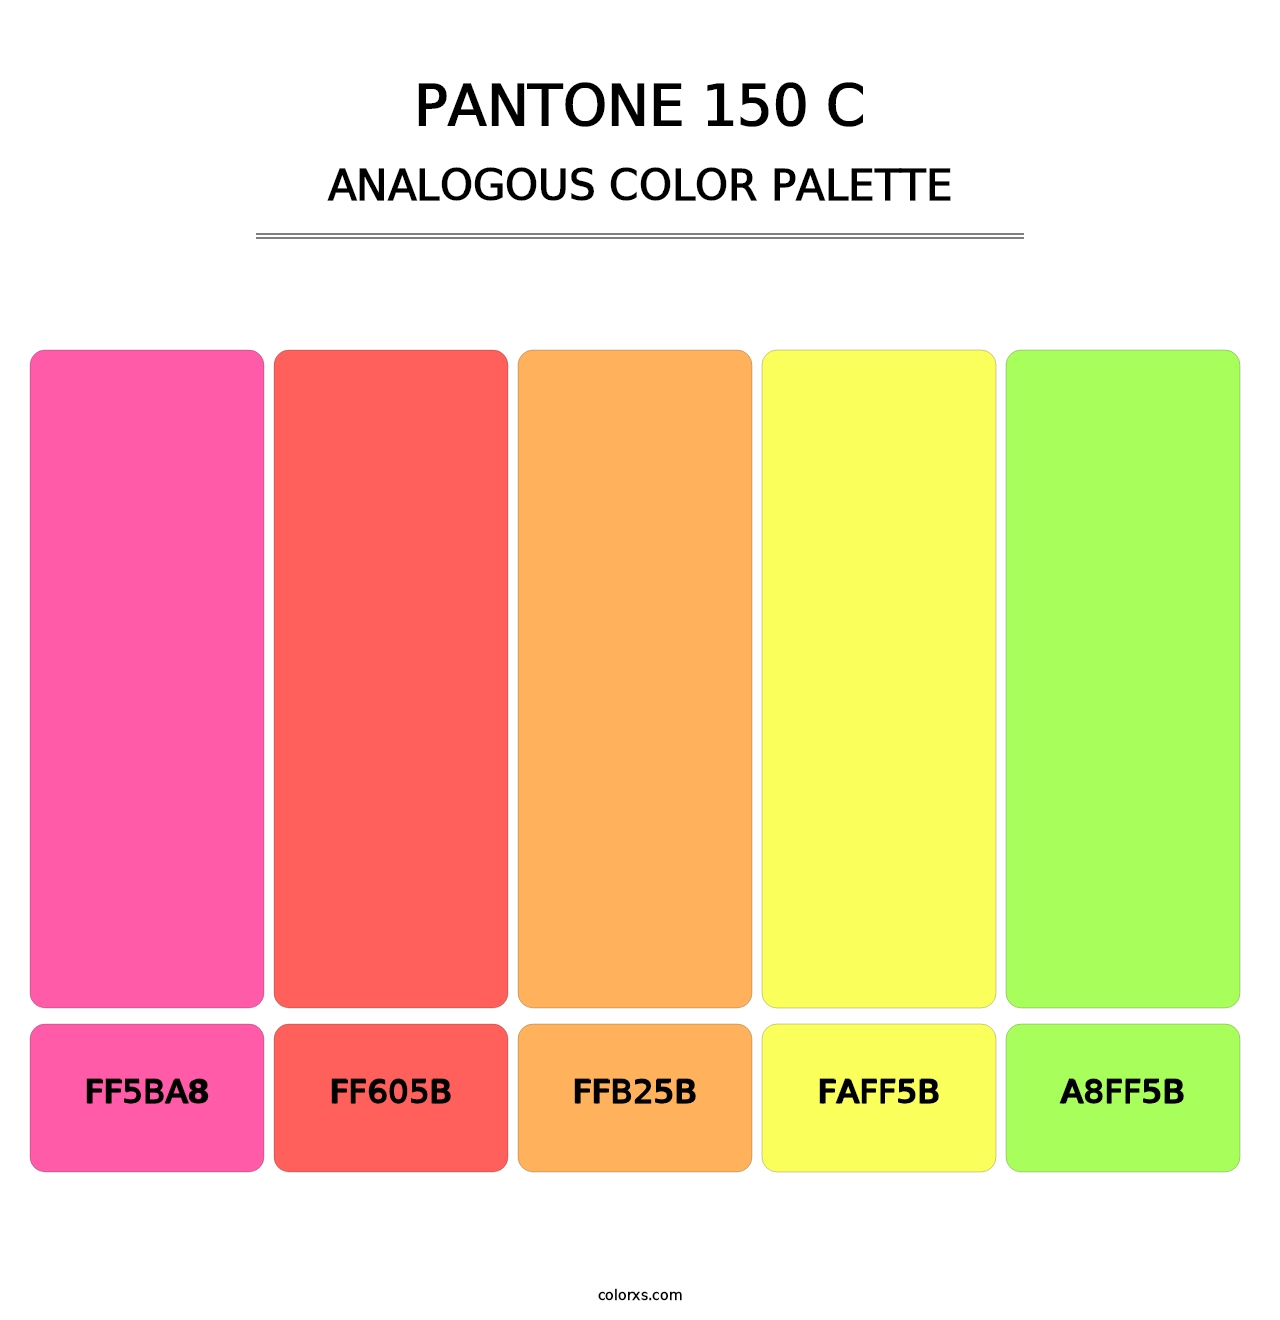 PANTONE 150 C - Analogous Color Palette